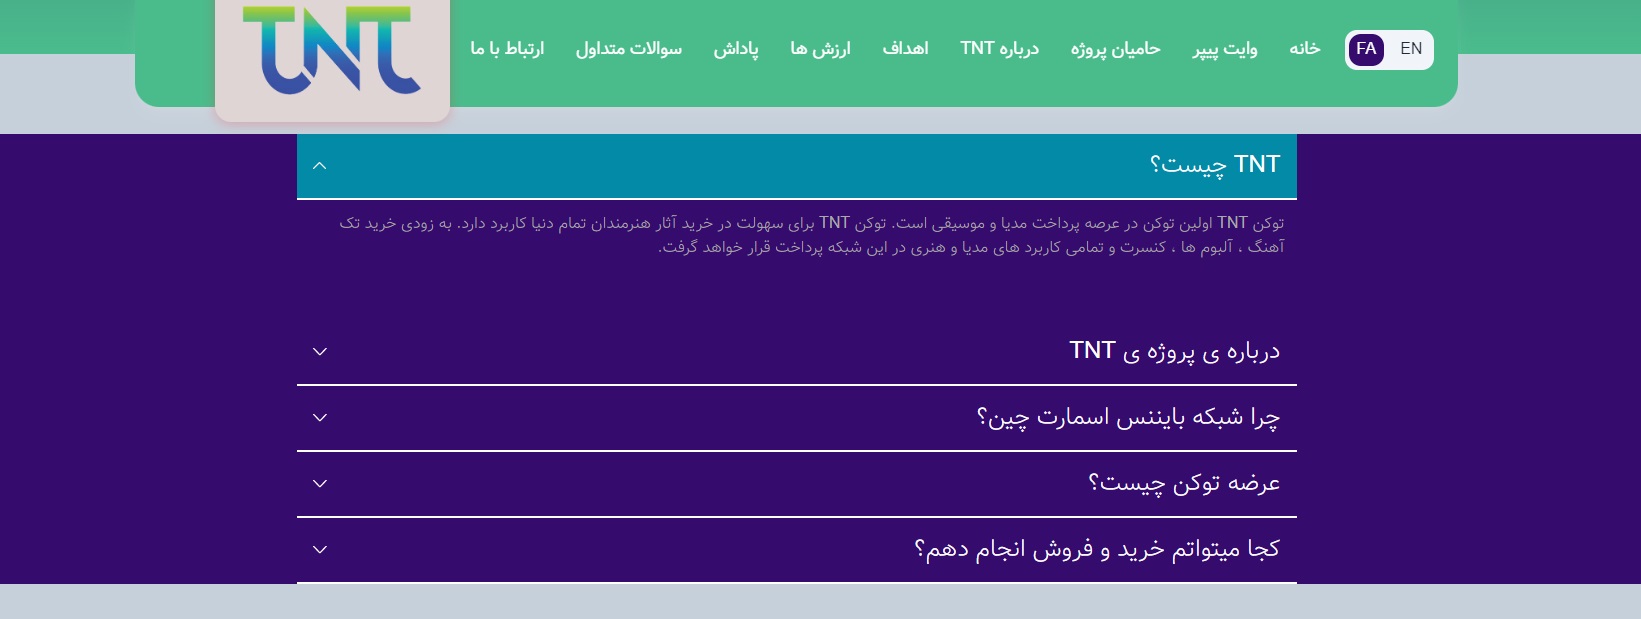 نگاهی به سایت توکن TNT-8